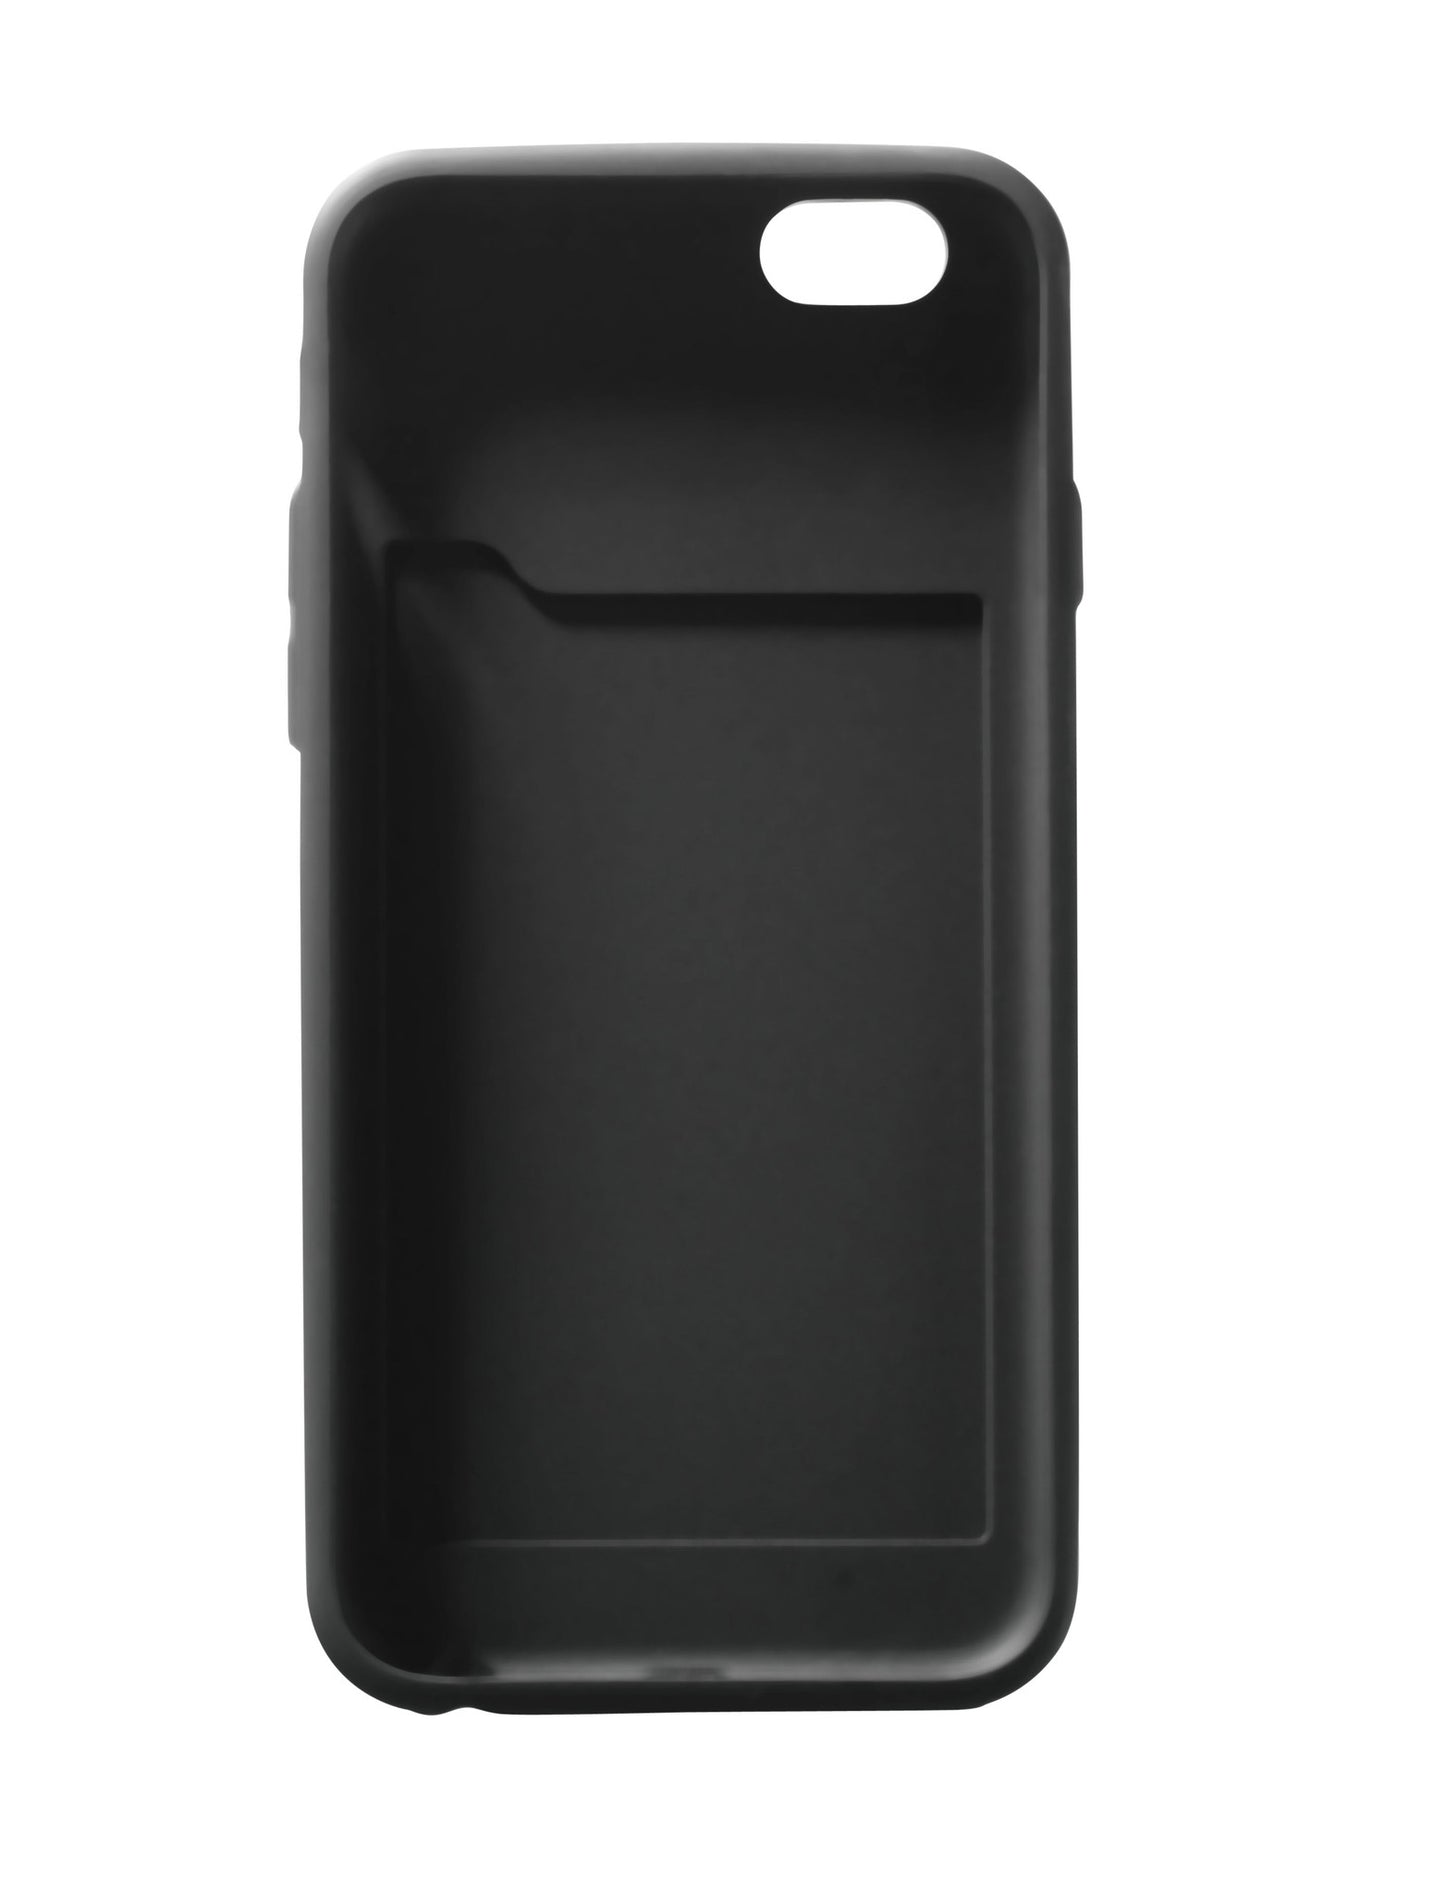 Iphone 6/6s case